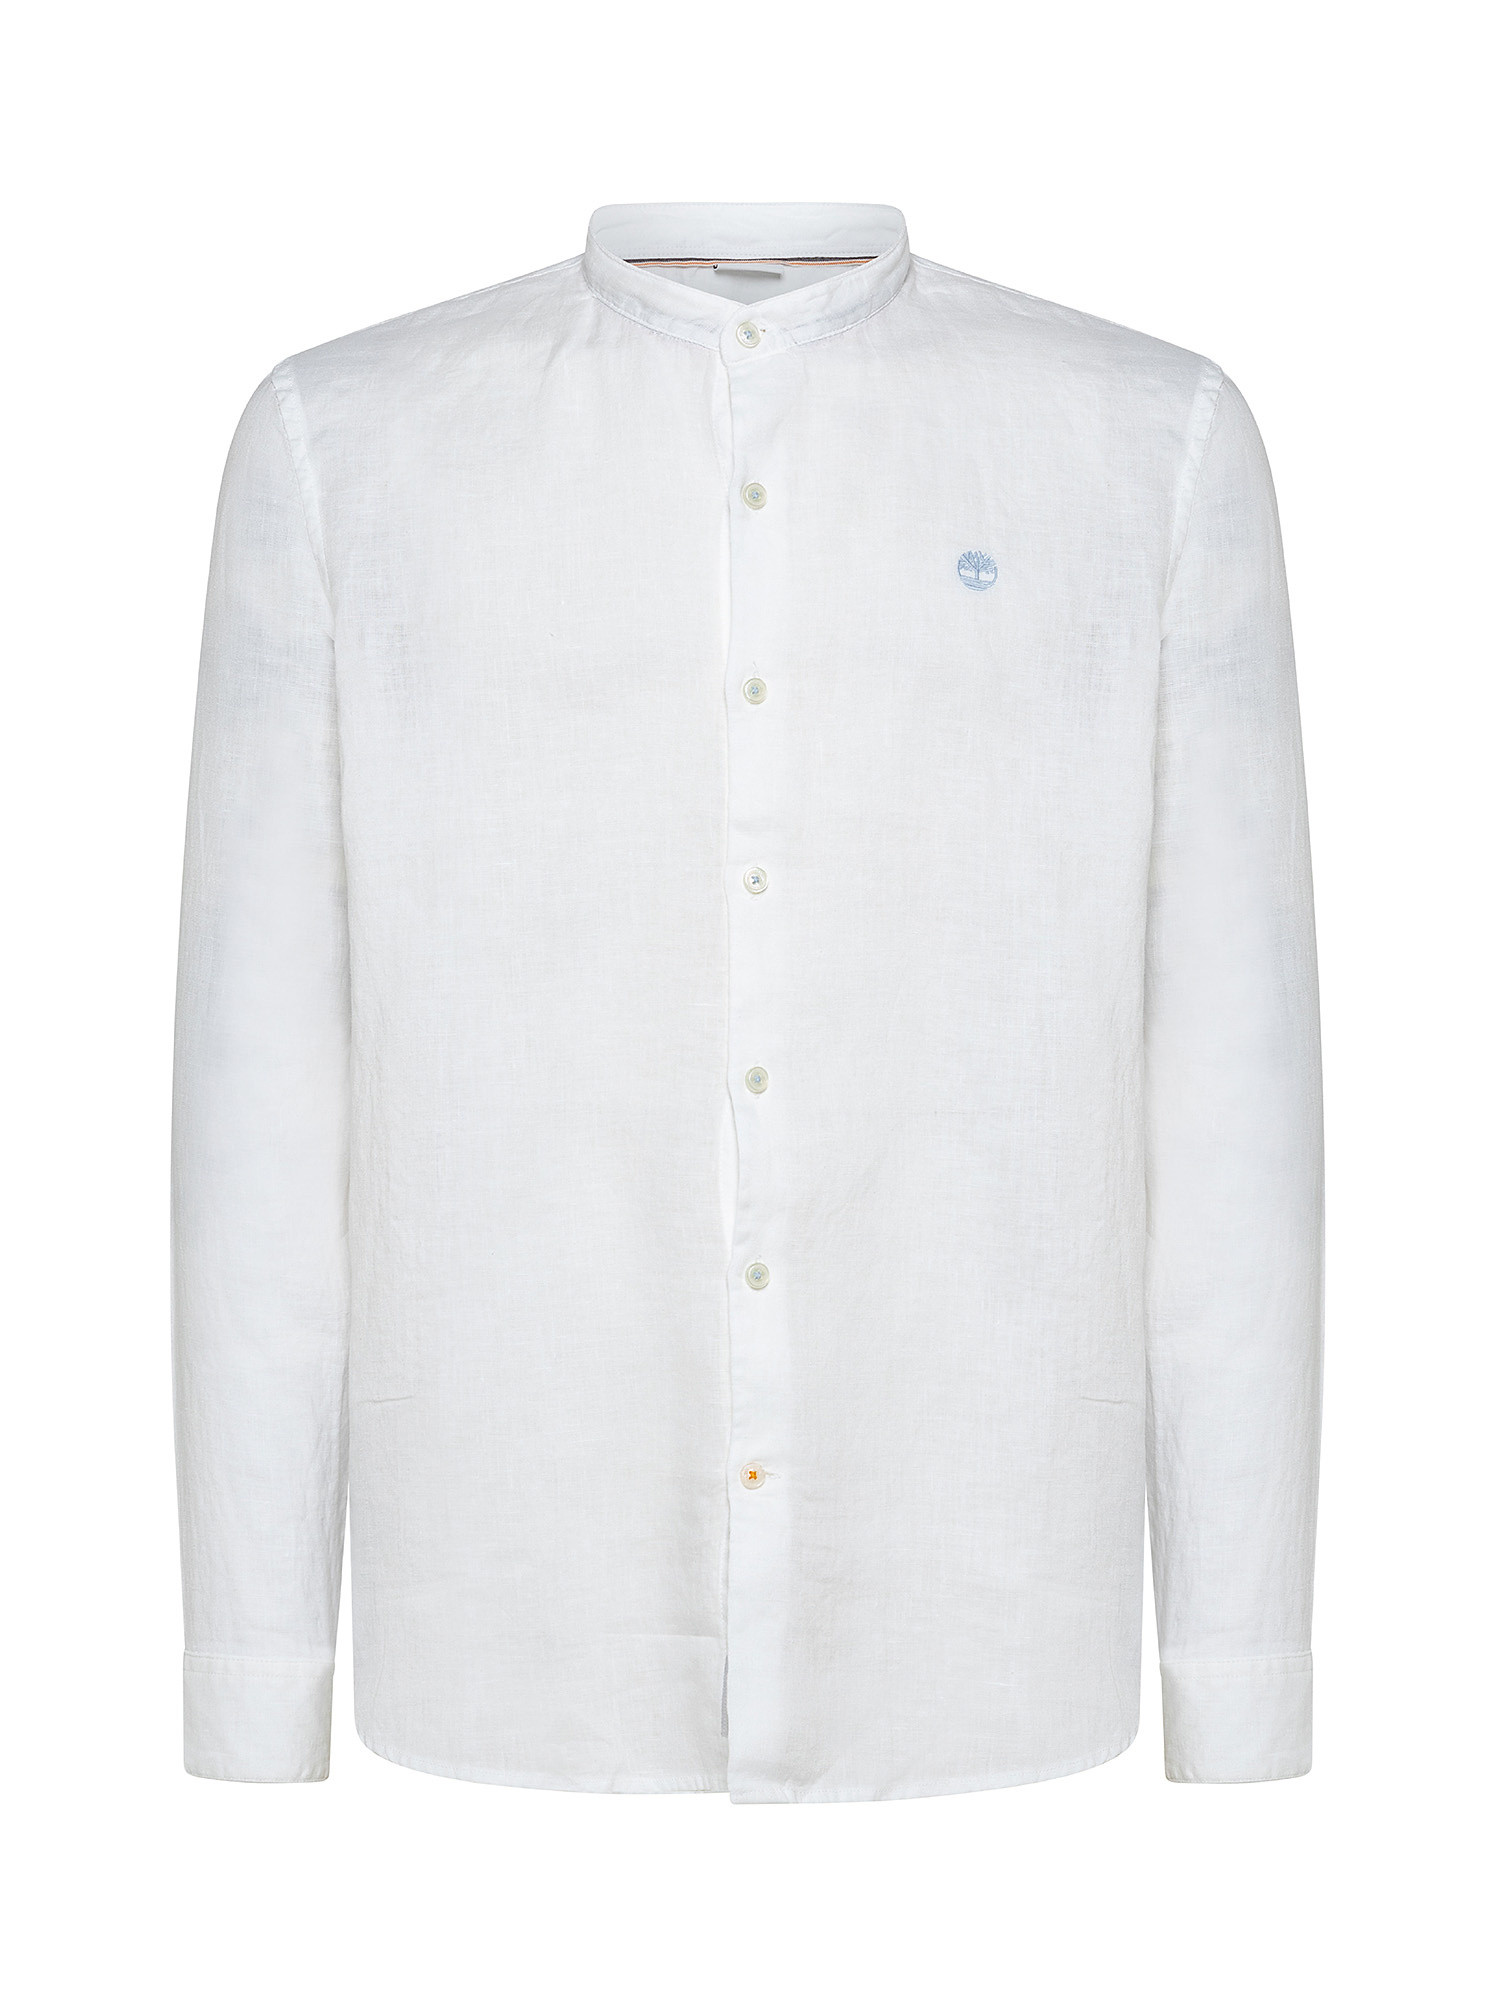 Camicia da Uomo in lino Mill River, Bianco, large image number 0